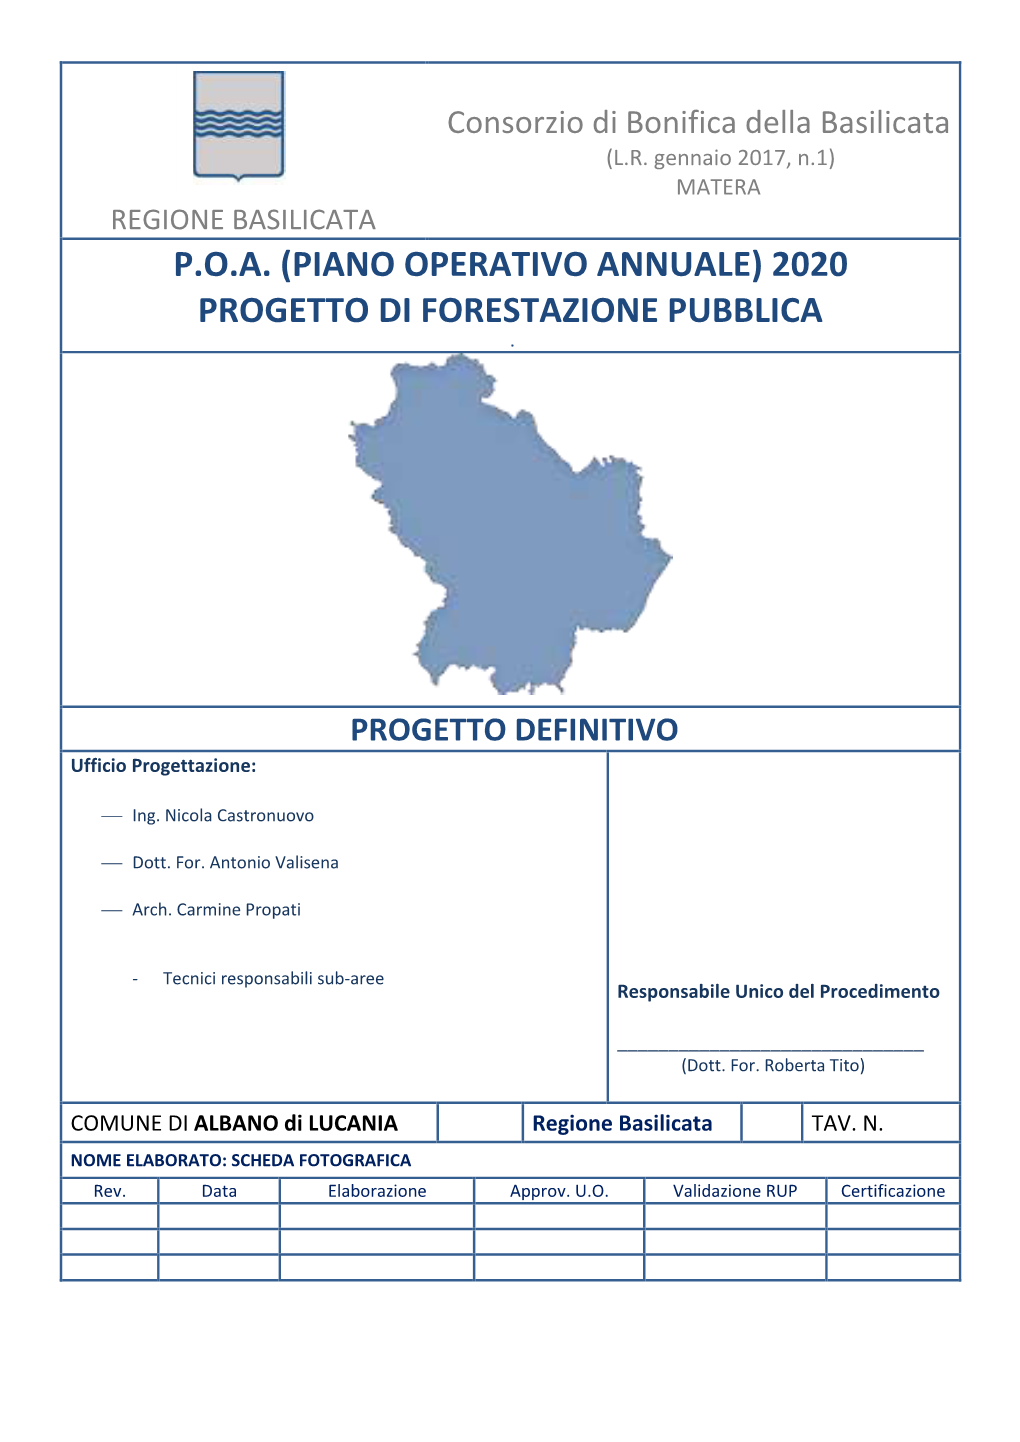 Piano Operativo Annuale) 2020 Progetto Di Forestazione Pubblica